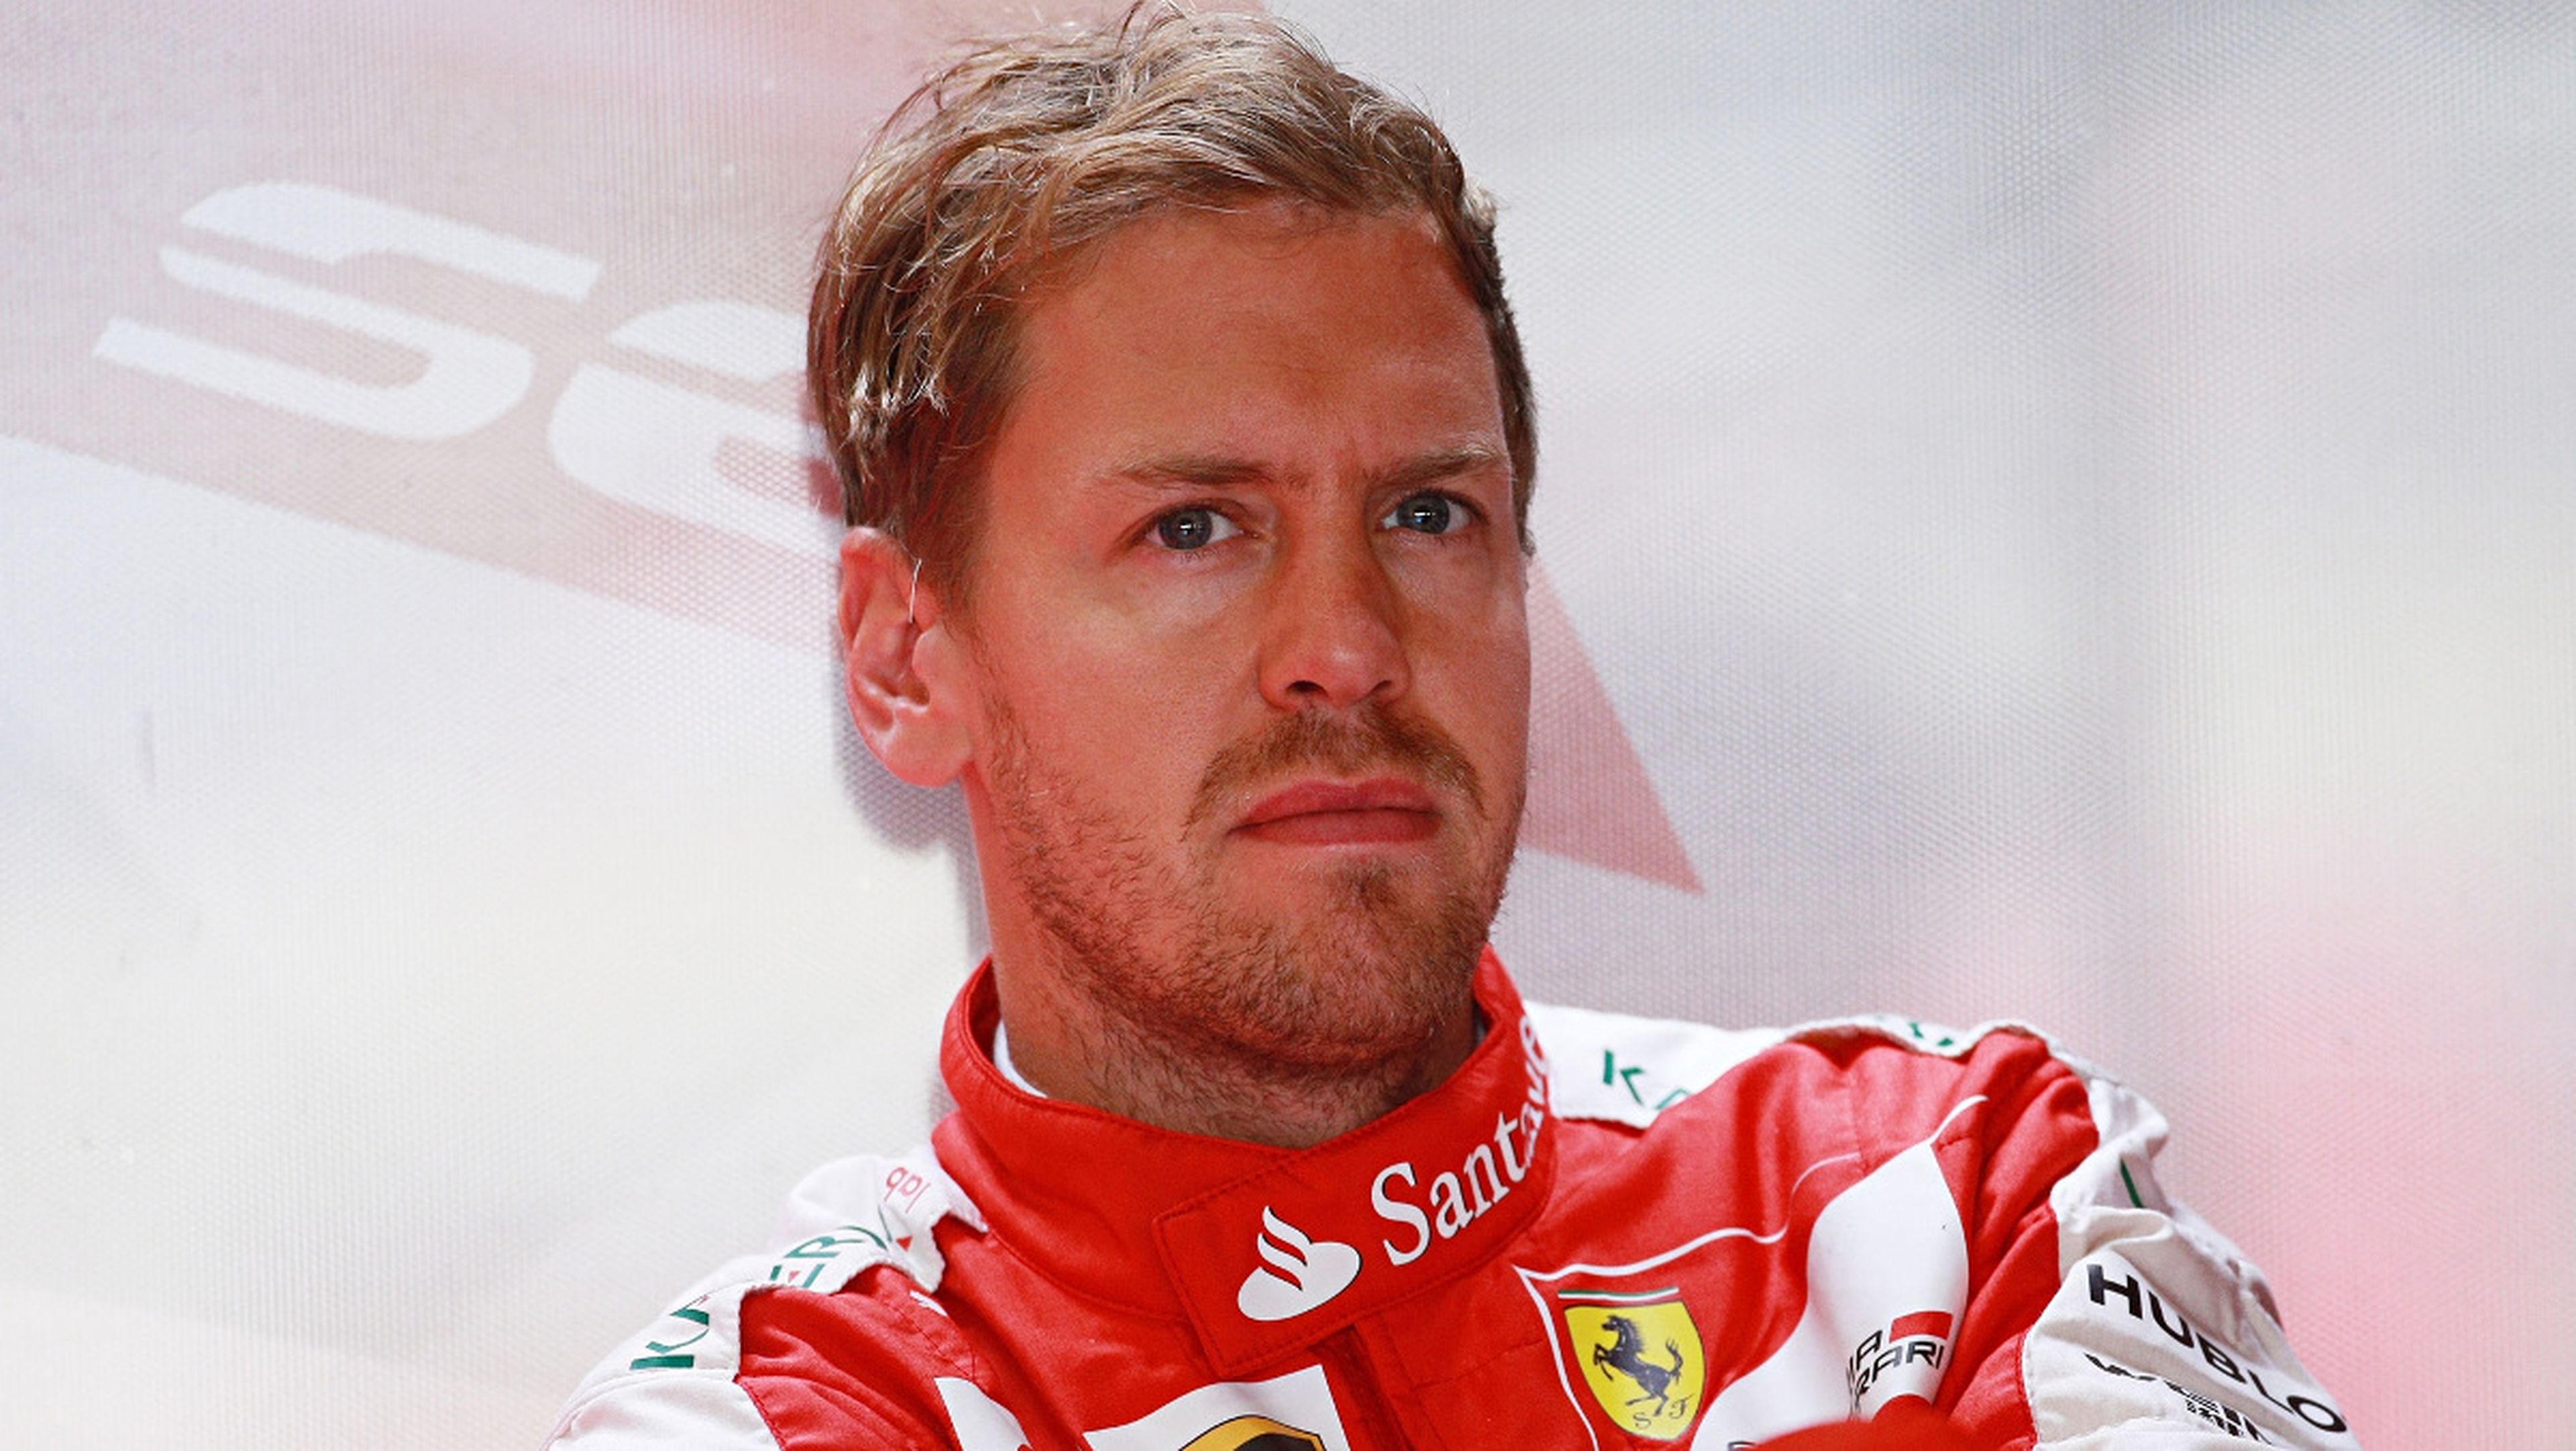 La FIA se reúne para estudiar el choque de Vettel en Bakú 2017